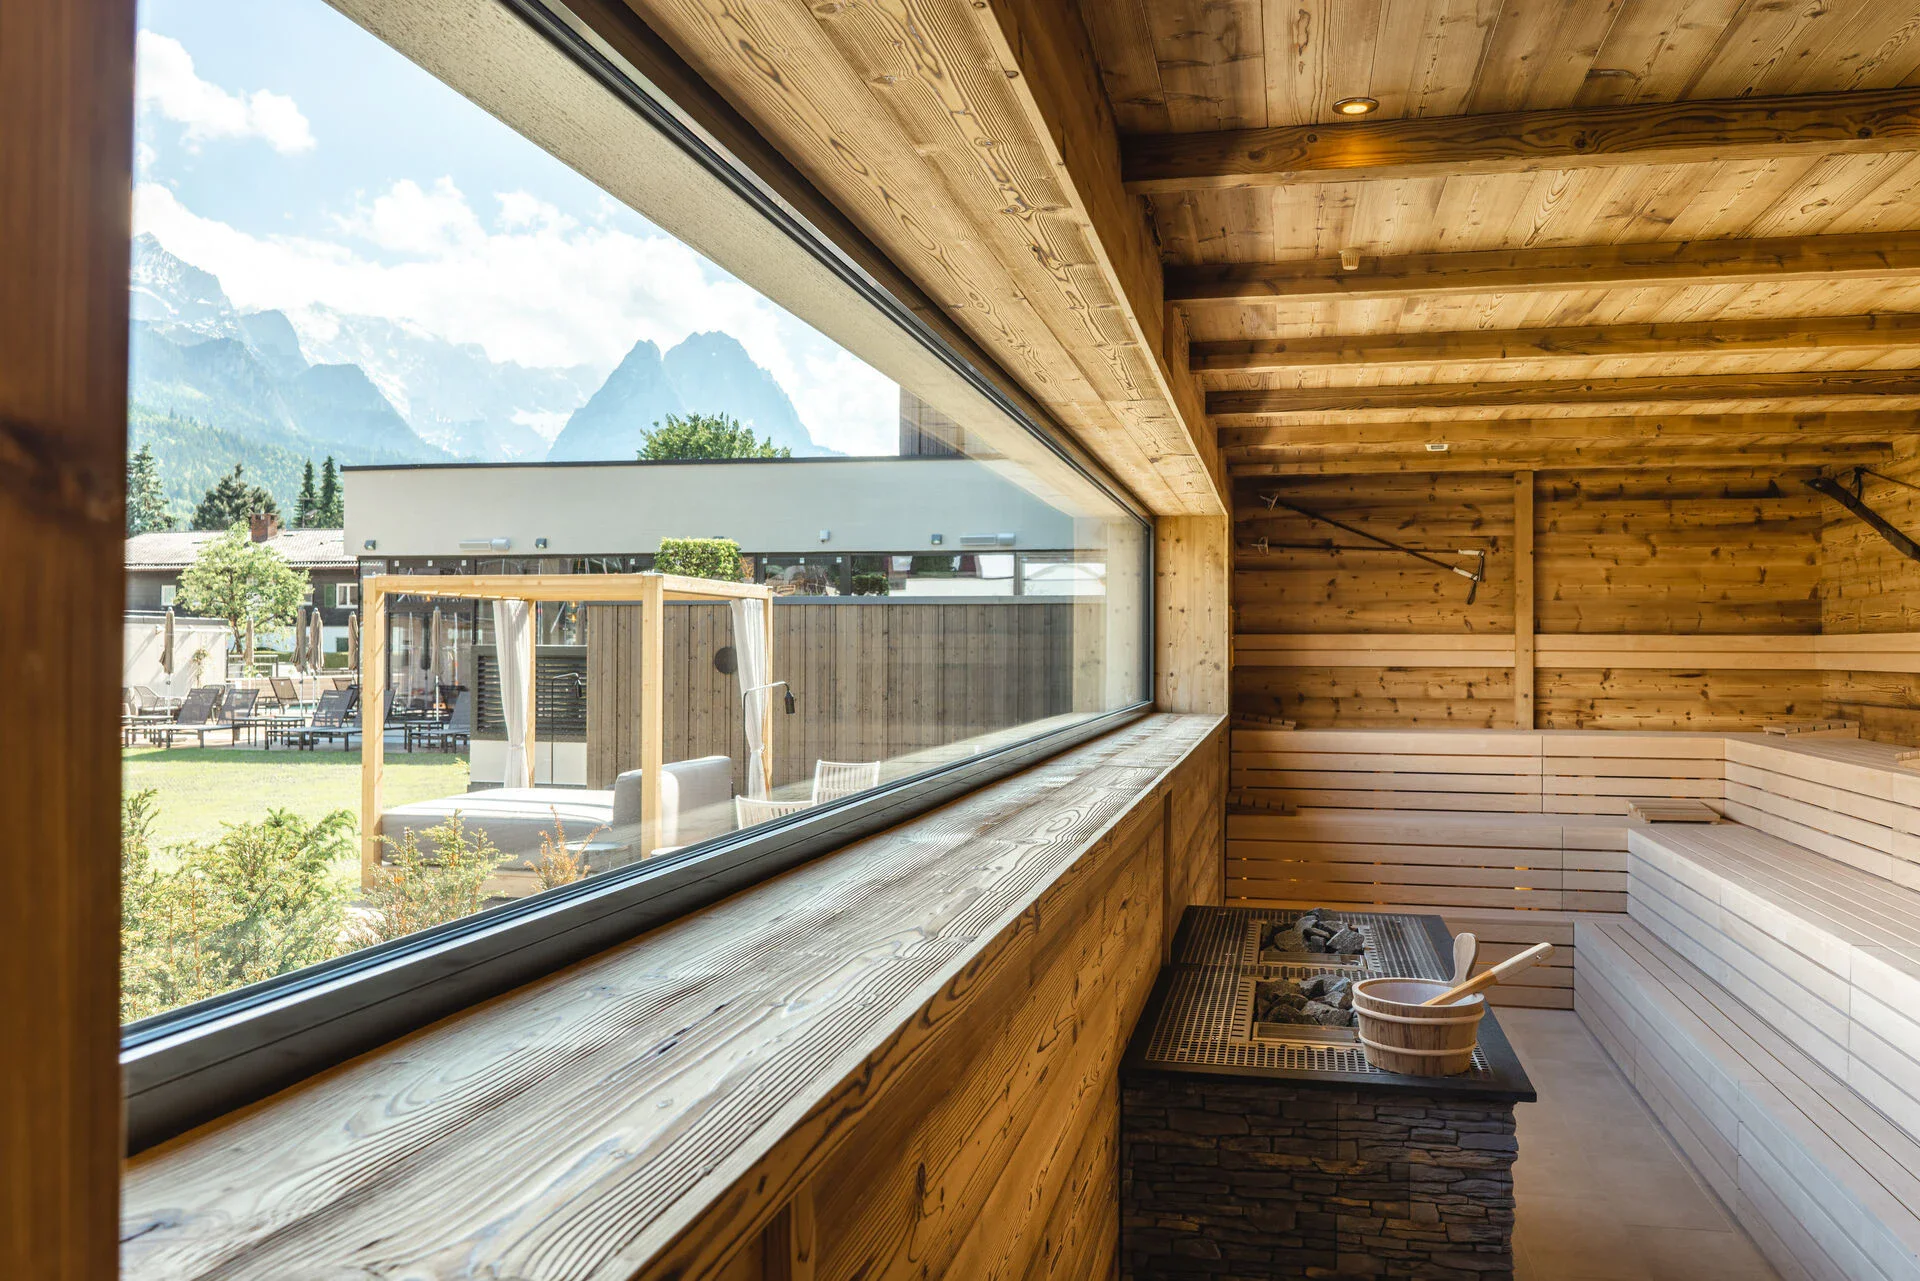 Hölzerner Saunaraum mit Saunaofen vor einem Fenster in einer Holzwand mit Blick auf die Berge